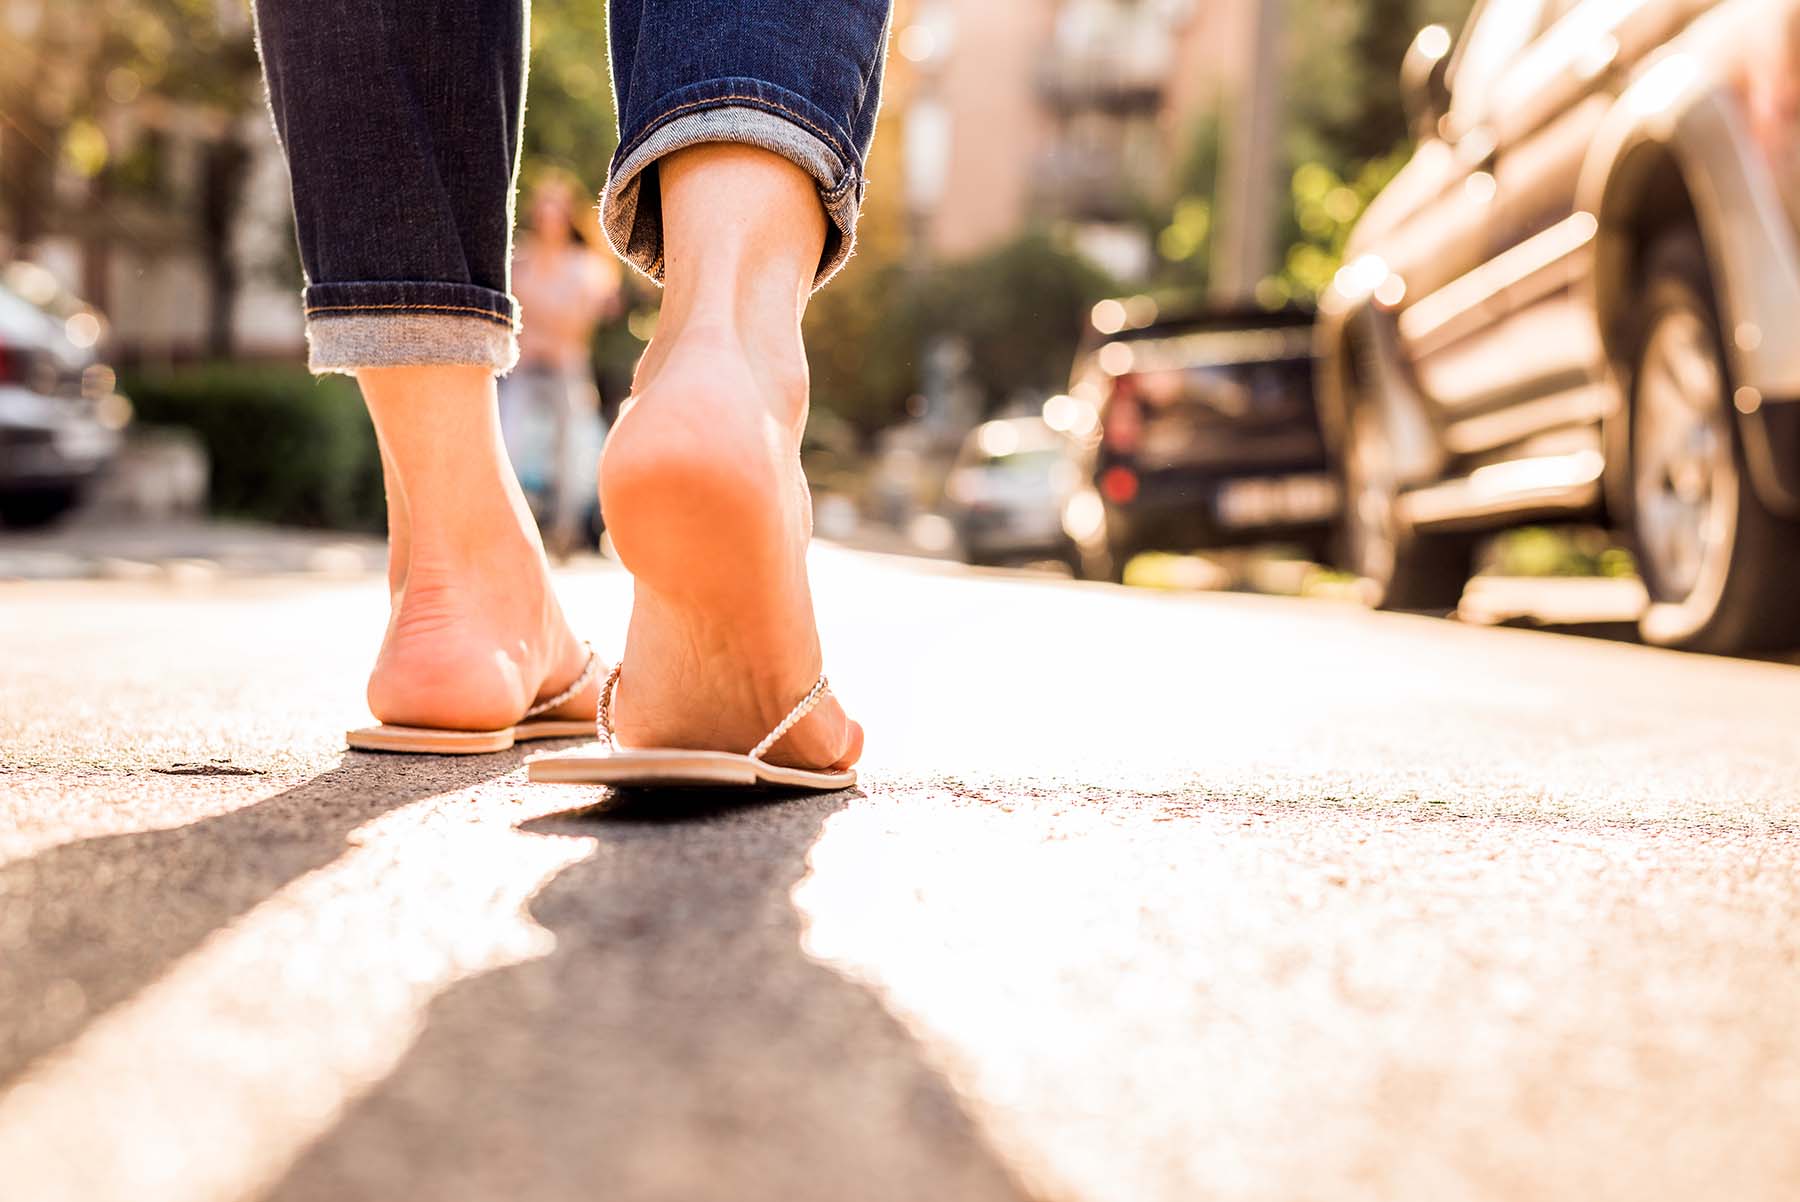 Footwear debate: Is it ever OK to wear flip-flops at work